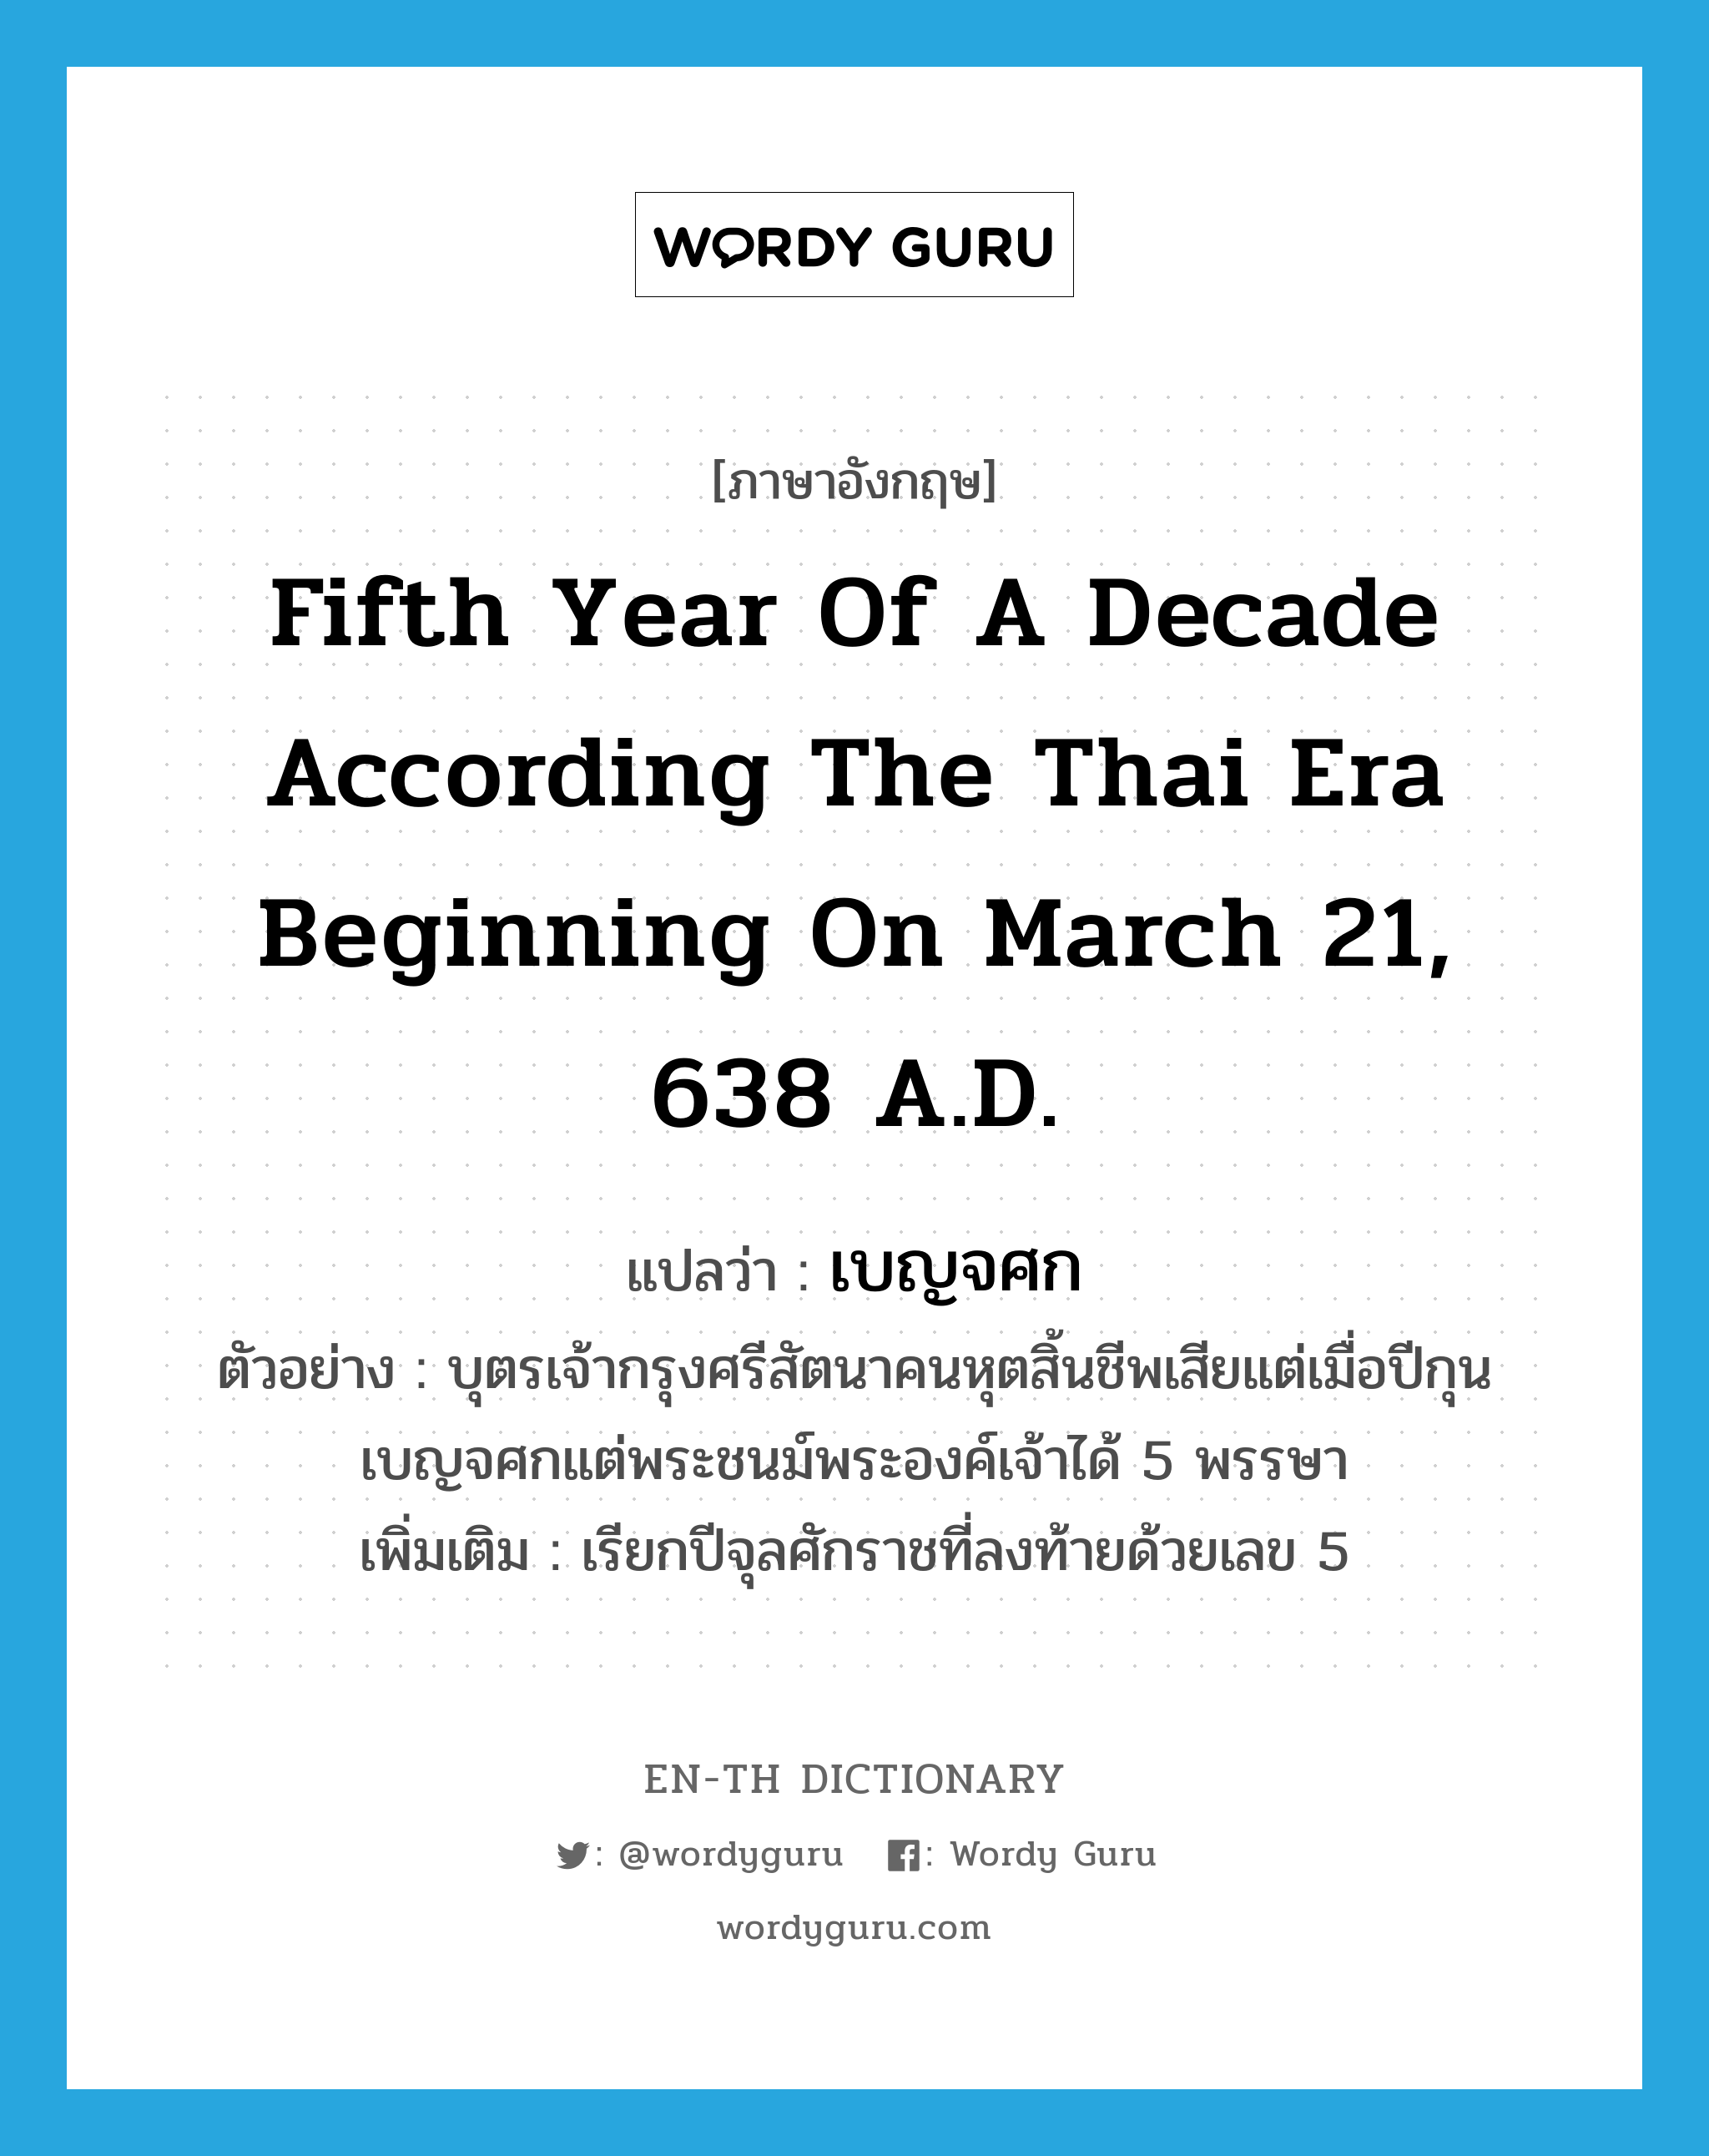 fifth year of a decade according the Thai era beginning on March 21, 638 A.D. แปลว่า?, คำศัพท์ภาษาอังกฤษ fifth year of a decade according the Thai era beginning on March 21, 638 A.D. แปลว่า เบญจศก ประเภท N ตัวอย่าง บุตรเจ้ากรุงศรีสัตนาคนหุตสิ้นชีพเสียแต่เมื่อปีกุนเบญจศกแต่พระชนม์พระองค์เจ้าได้ 5 พรรษา เพิ่มเติม เรียกปีจุลศักราชที่ลงท้ายด้วยเลข 5 หมวด N